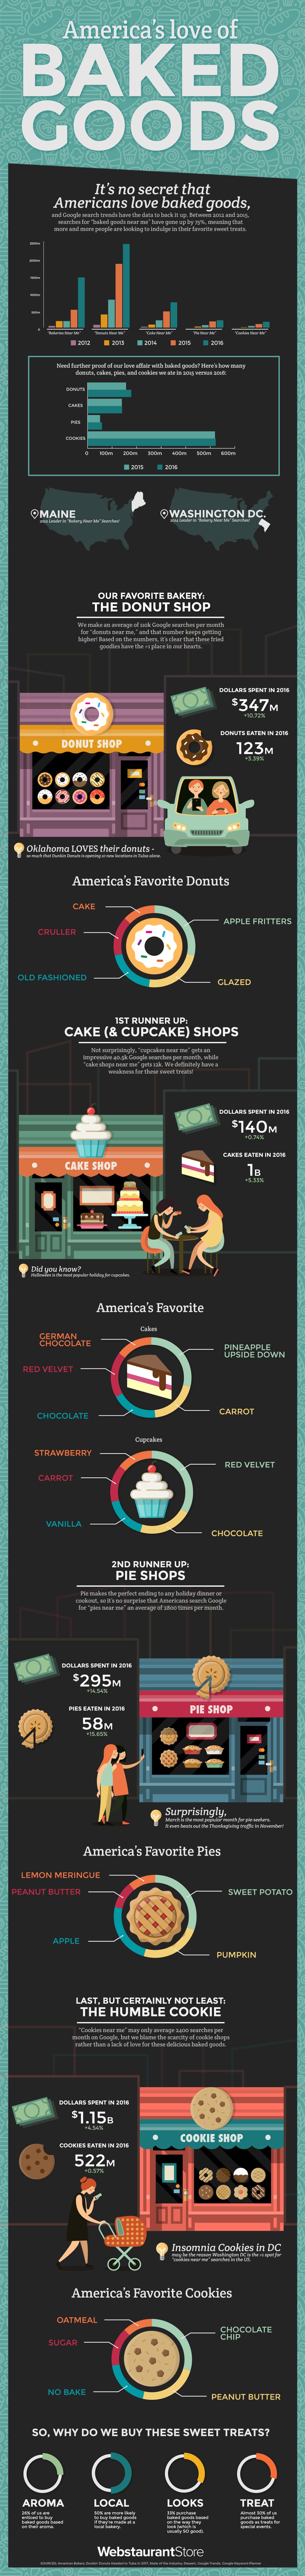 America's Love of Baked Goods